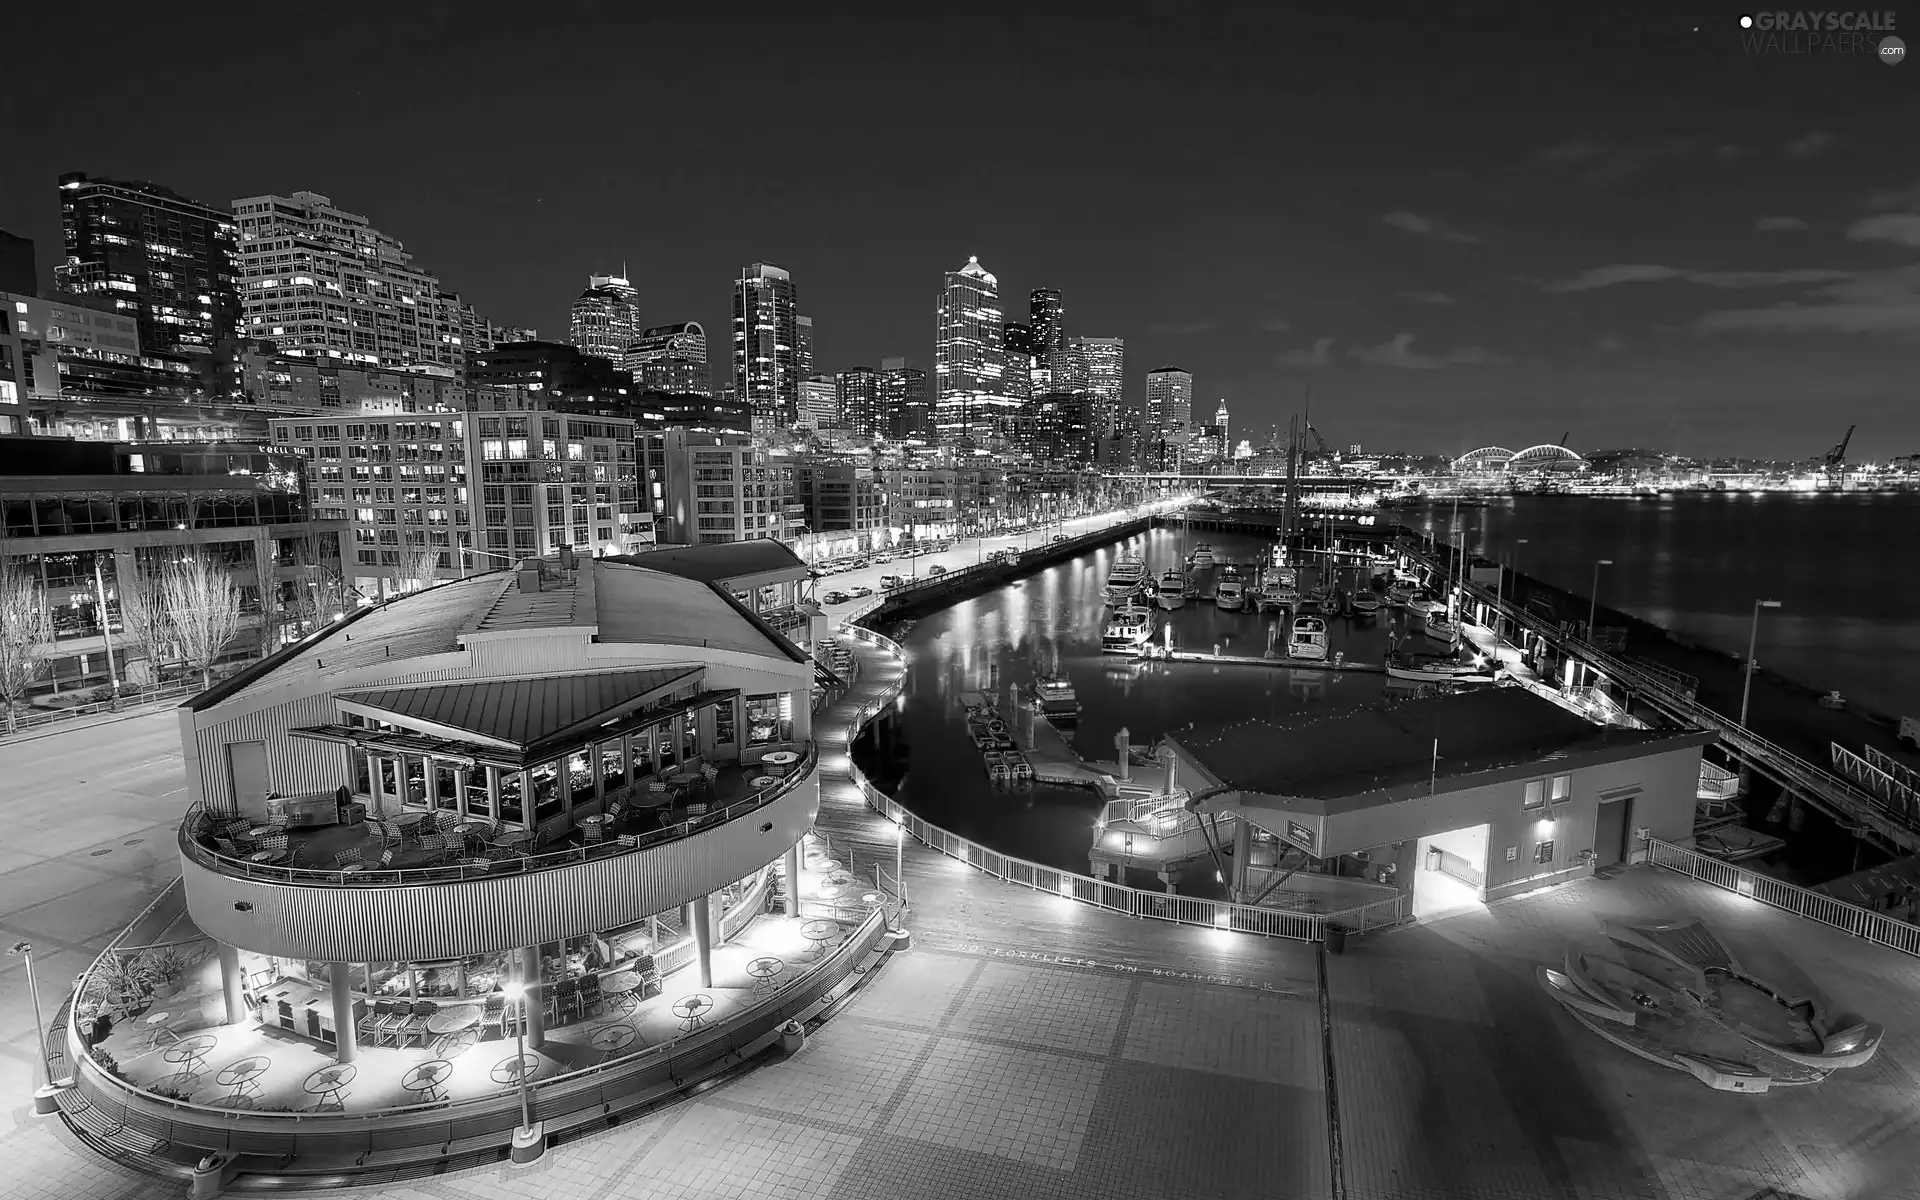 Marina, Seattle, wharf, Restaurant, Yachts, night